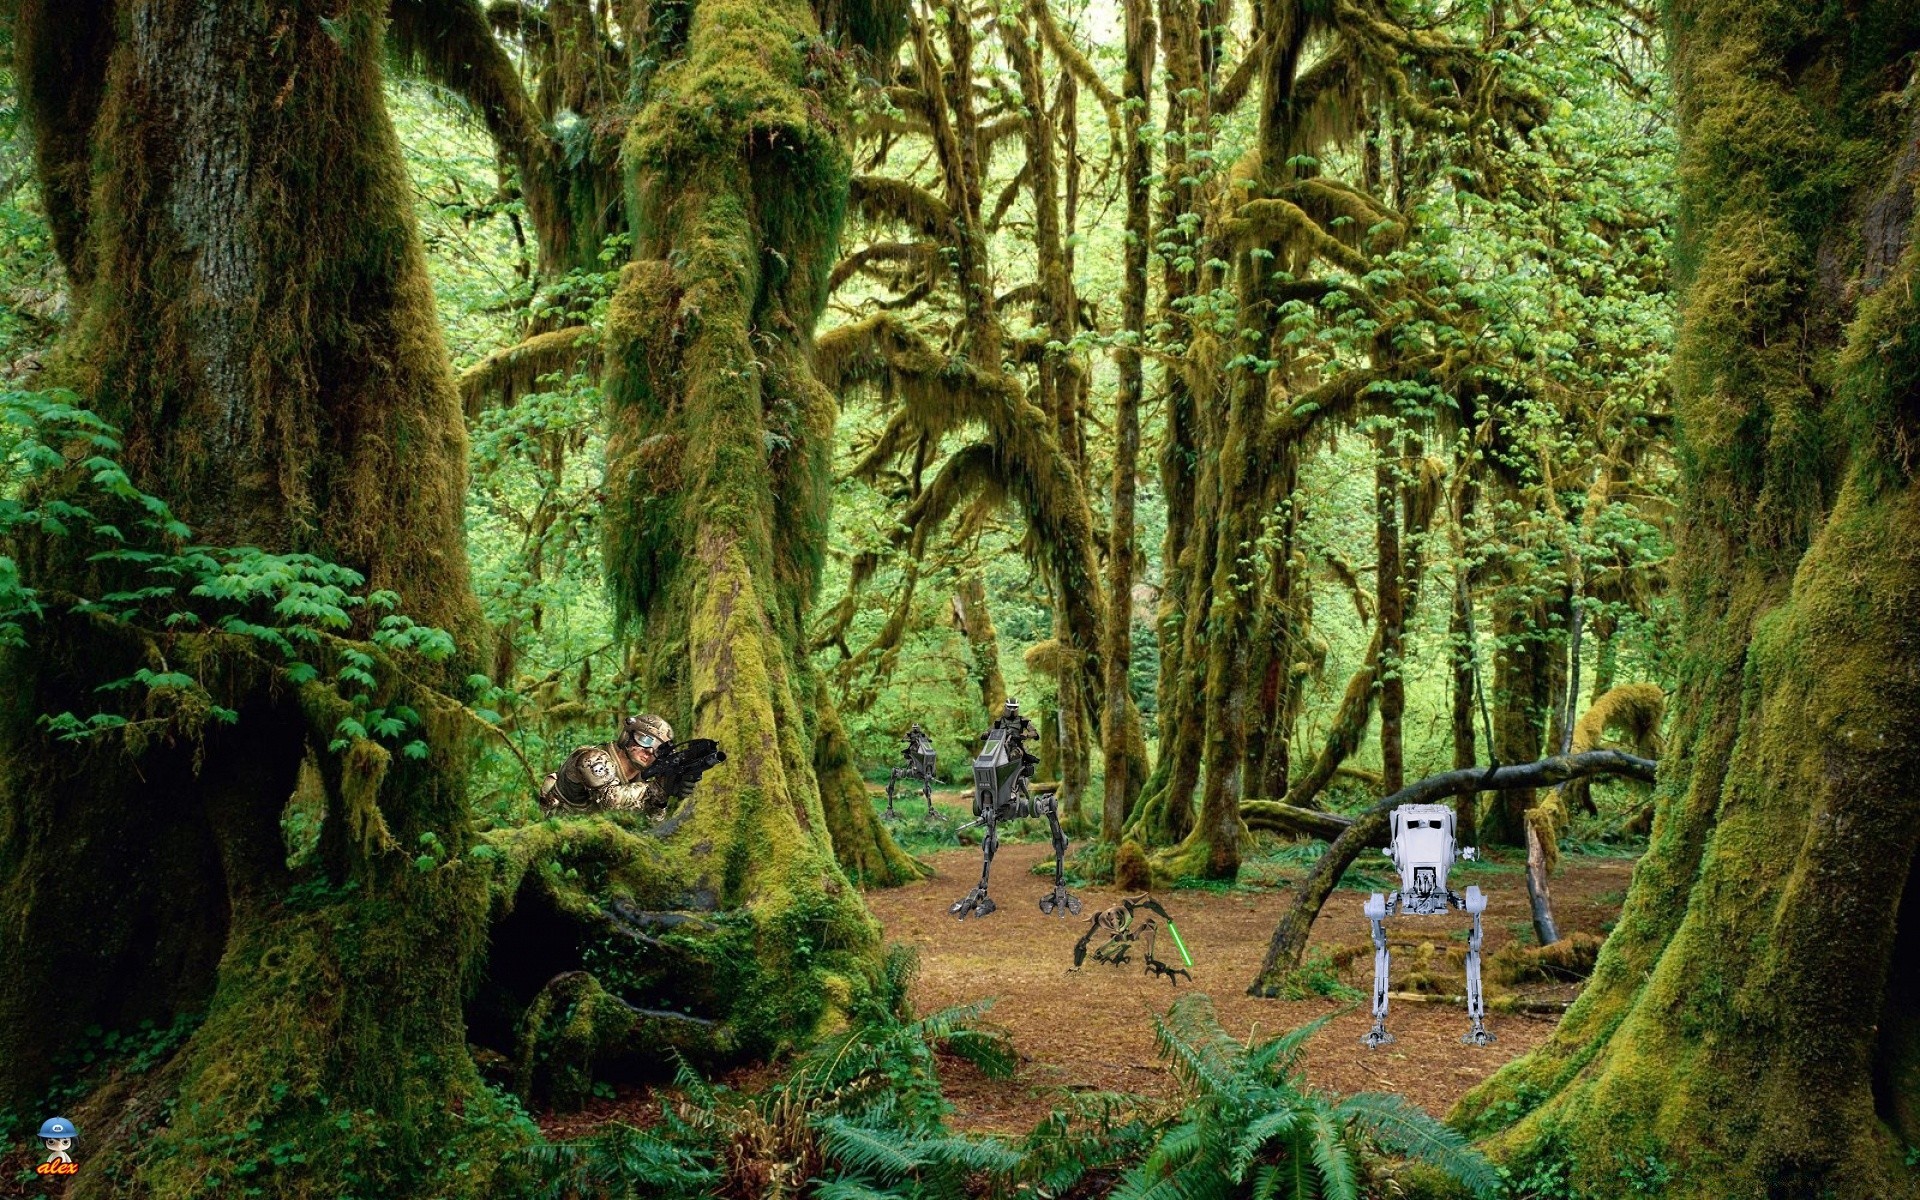 star wars древесины дерево тропический лес лист природа парк джунгли среды пейзаж ферн пышные мох путешествия флора на открытом воздухе живописный корень